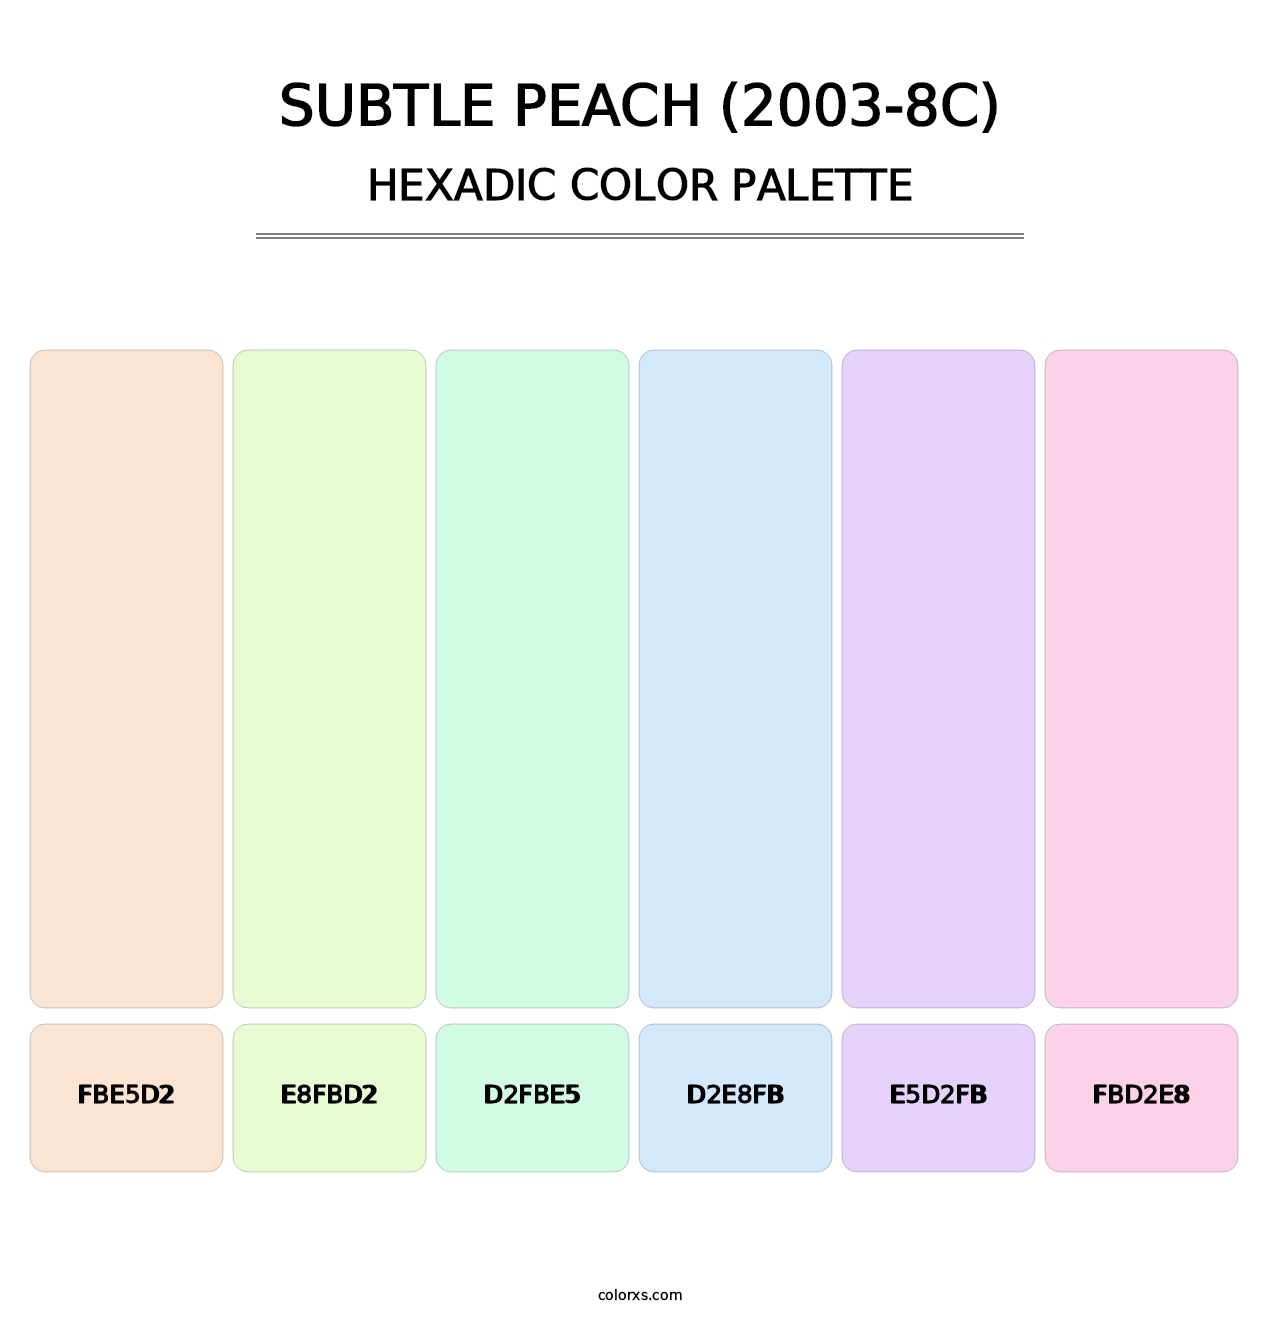 Subtle Peach (2003-8C) - Hexadic Color Palette